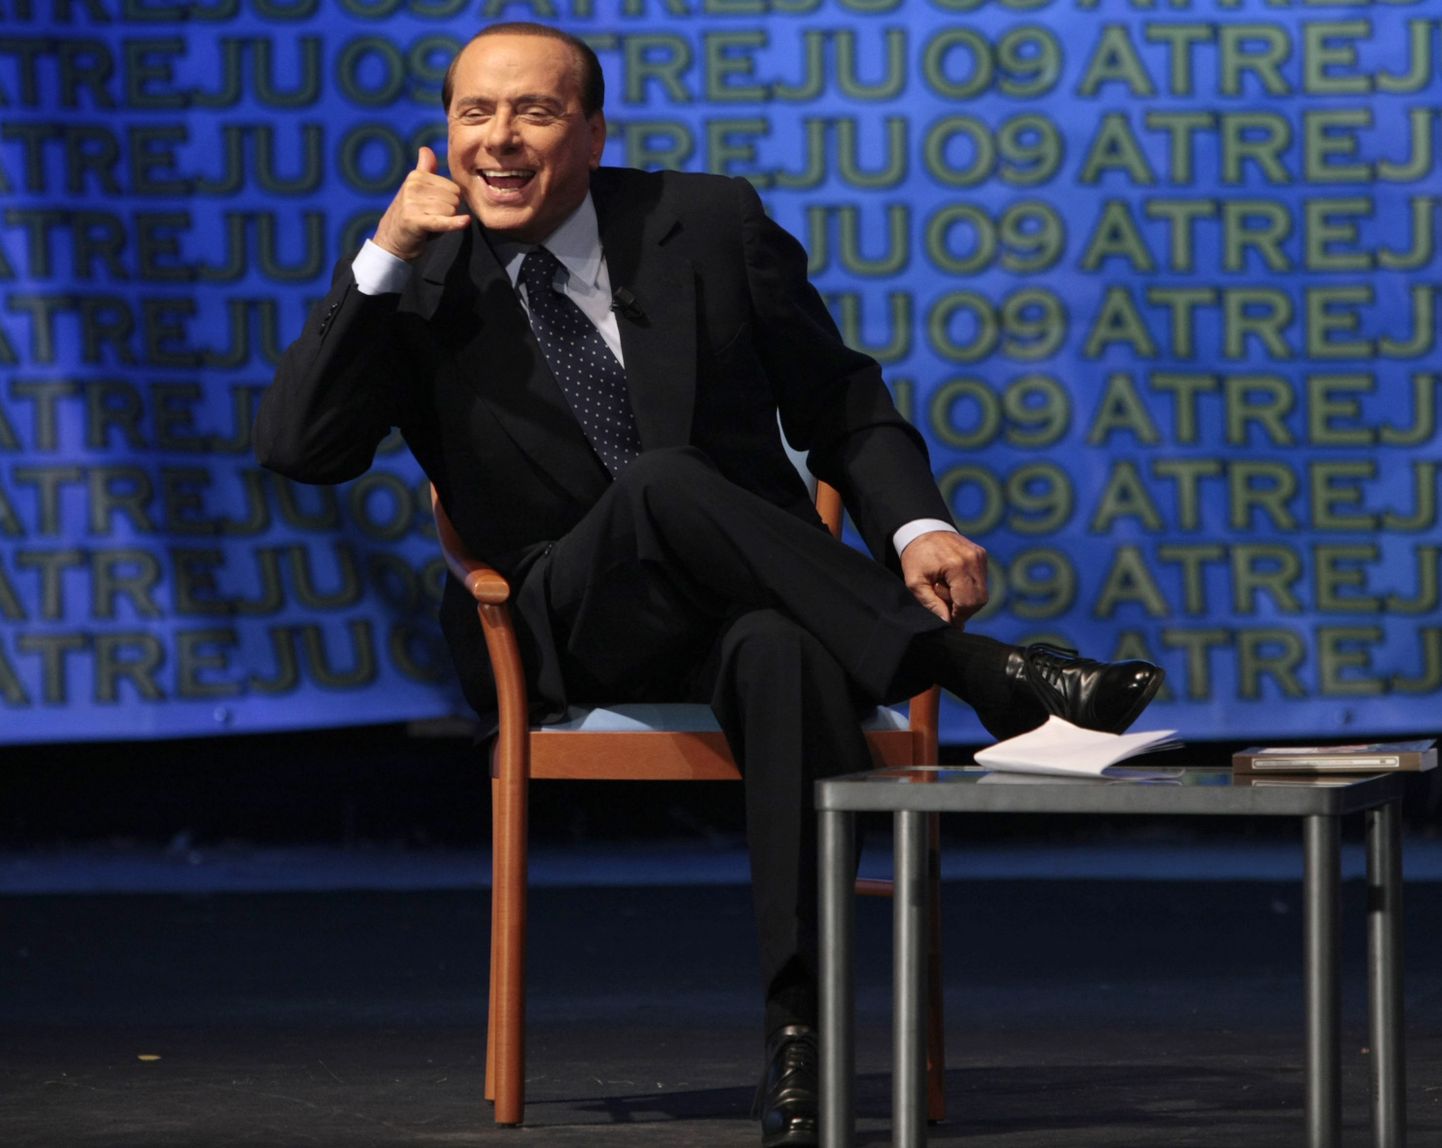 Itaalia peaminister Silvio Berlusconi tembutas Roomas toimunud Forza Italia noortekonverentsil 9. septembril 2009. a.